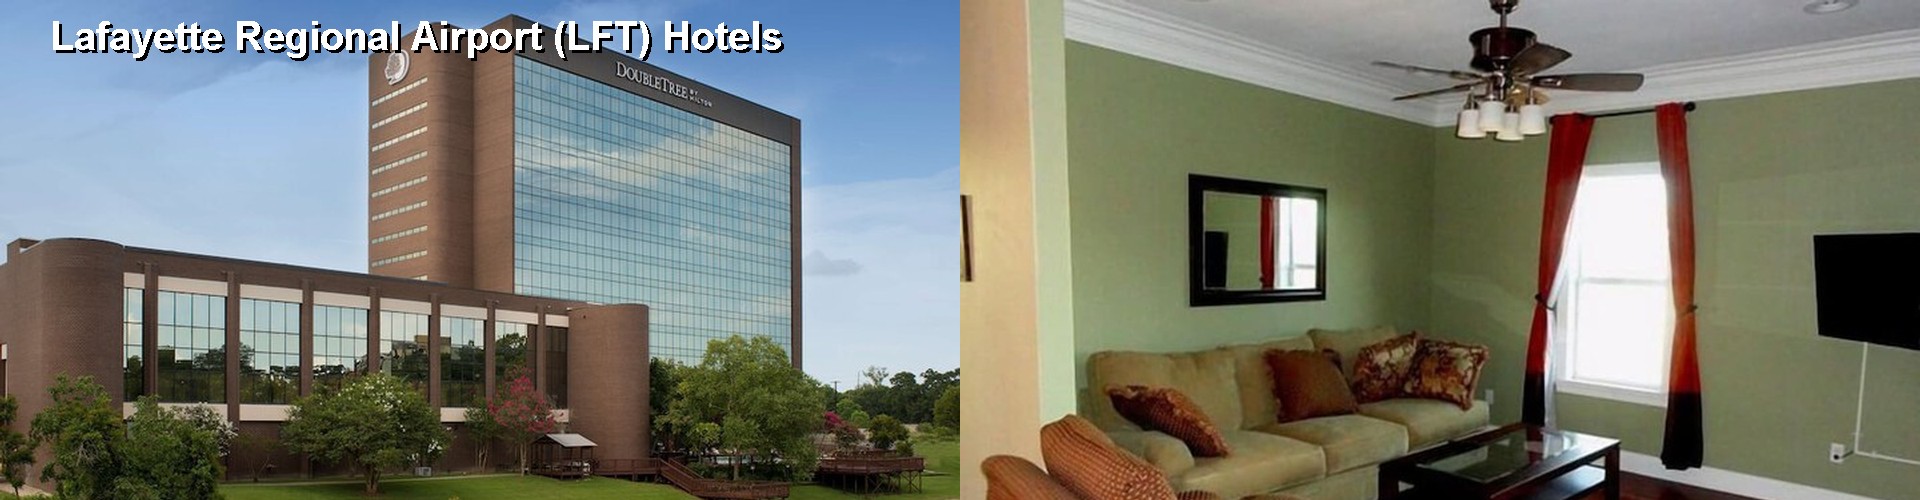 2 Best Hotels near Lafayette Regional Airport (LFT)